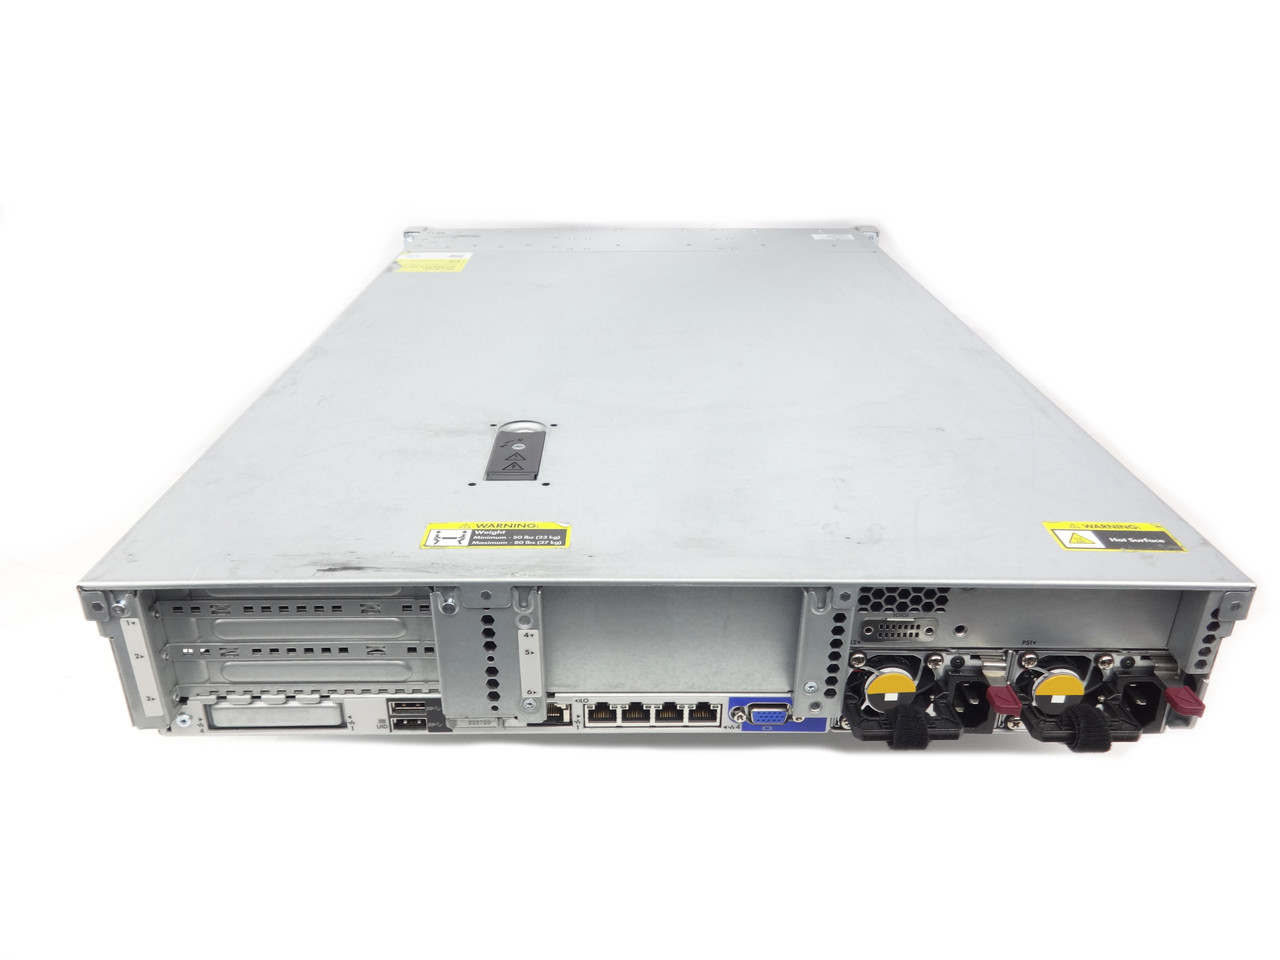 Bedst hele Sæbe HPE DL380 G9 Custom Configuration | Refurbished